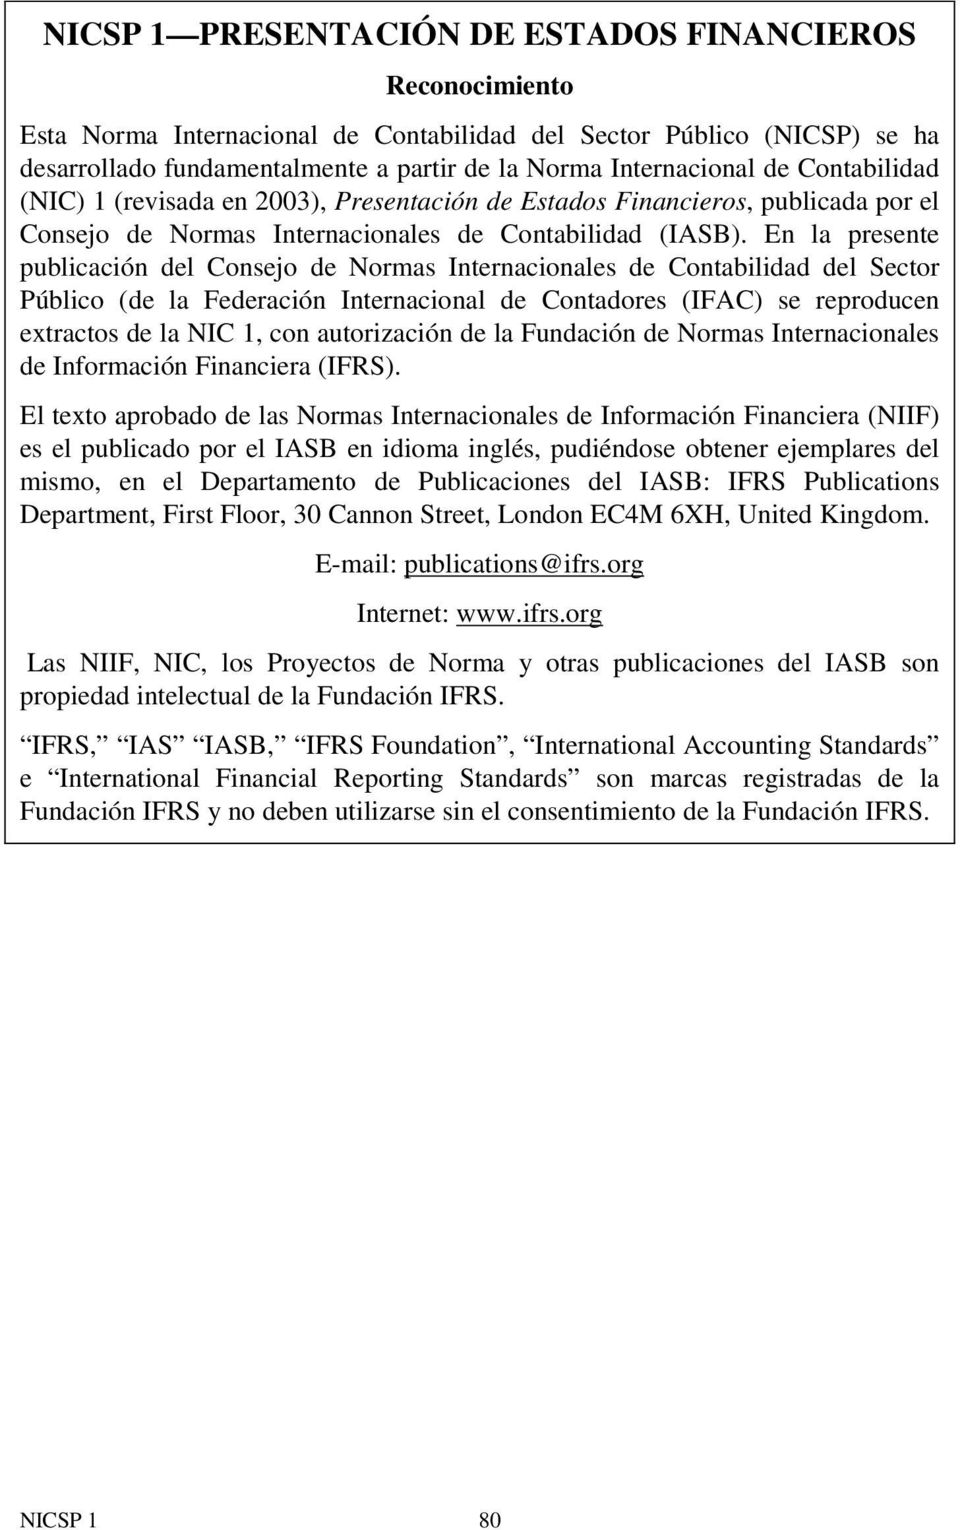 En la presente publicación del Consejo de Normas Internacionales de Contabilidad del Sector Público (de la Federación Internacional de Contadores (IFAC) se reproducen extractos de la NIC 1, con